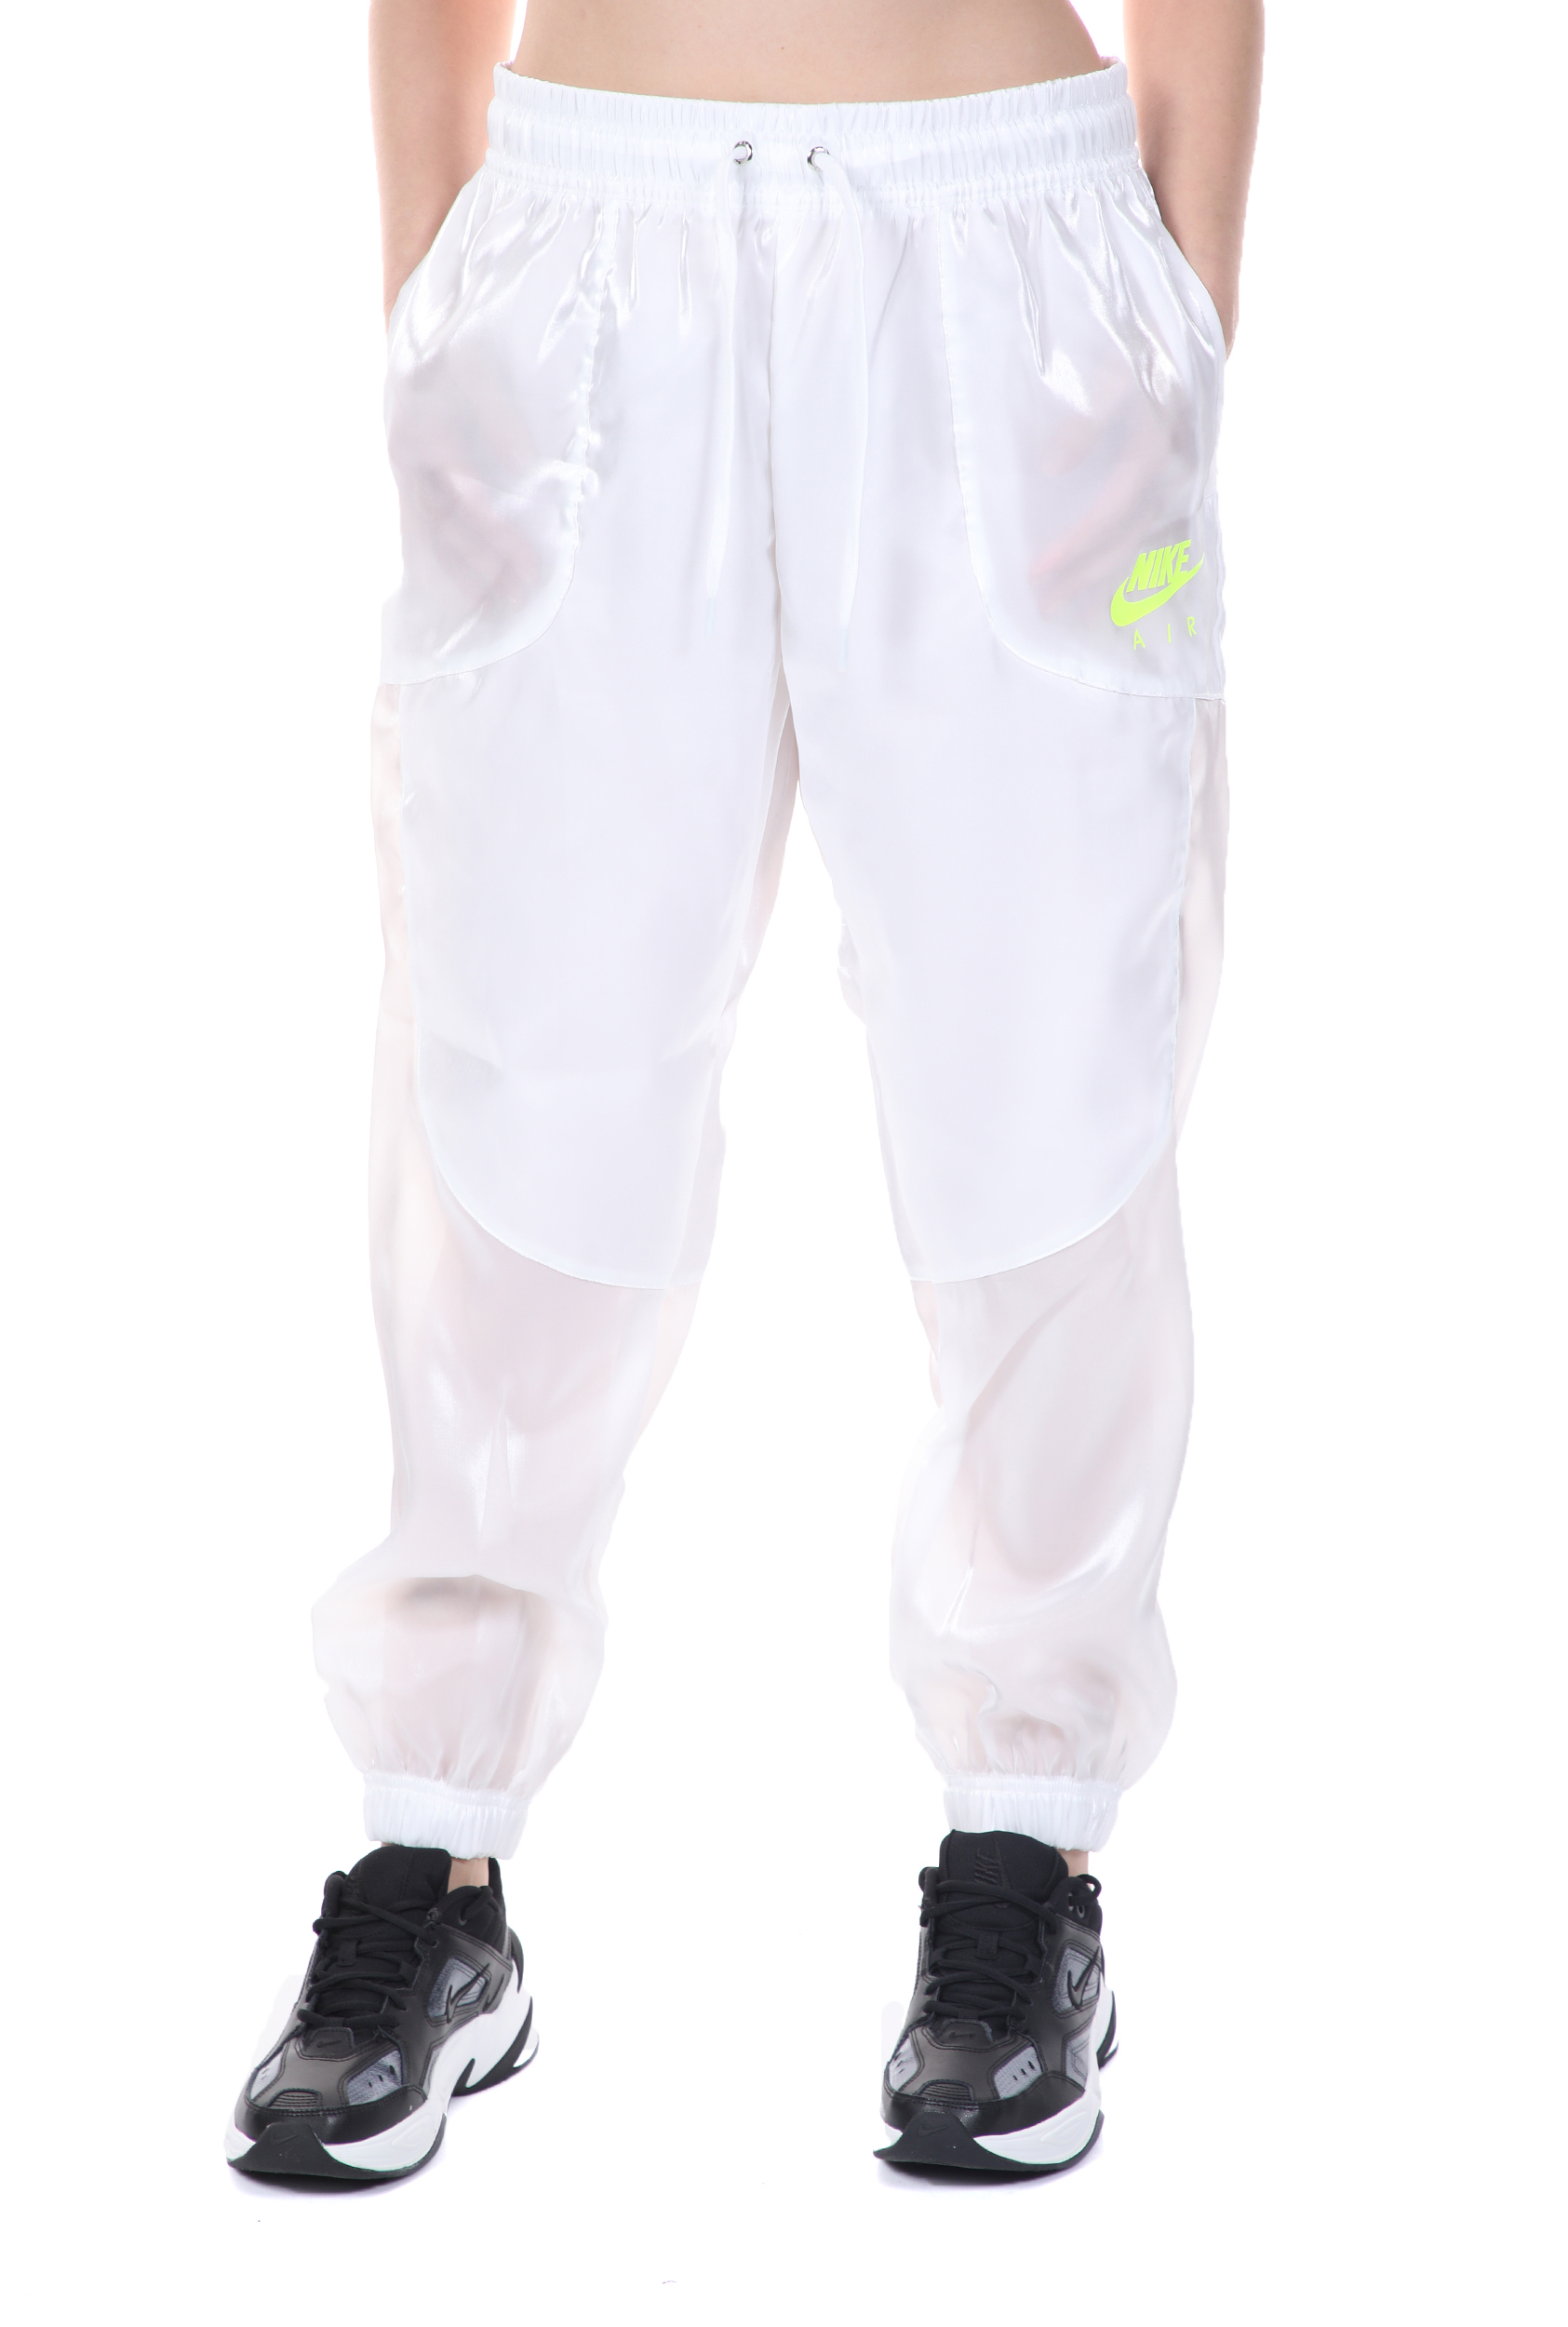 Γυναικεία/Ρούχα/Αθλητικά/Φόρμες NIKE - Γυναικείο παντελόνι φόρμας NIKE NSW AIR PANT SHEEN λευκό